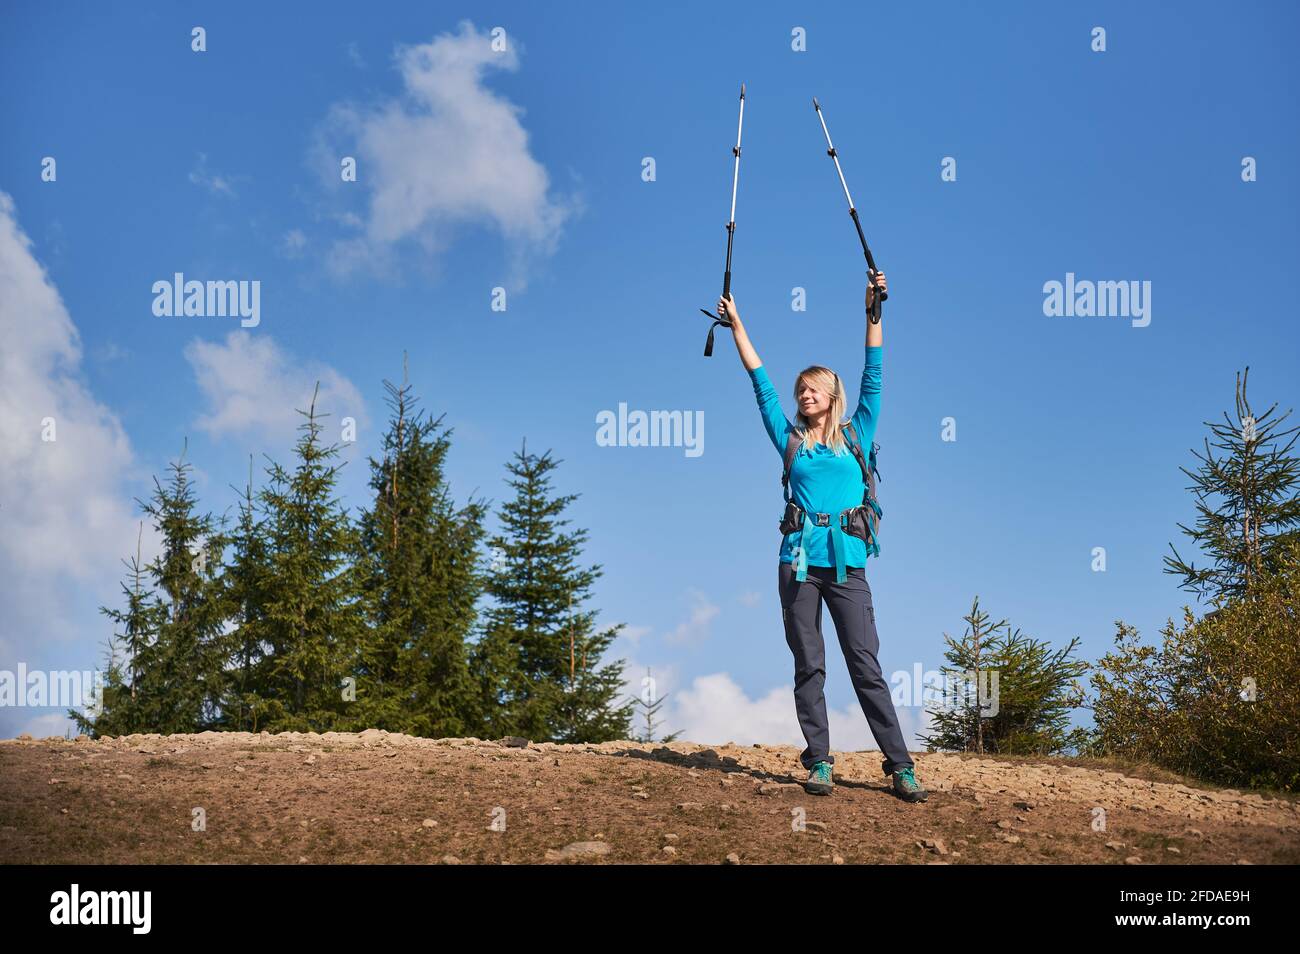 Die fröhliche Blondine hob triumphierend ihre Hände und hielt Trekkingstöcke, nachdem sie auf die Steinspitze des Hügels kletterte, auf dem Hintergrund mehrerer grüner Bäume und eines wunderschönen blauen Himmels. Stockfoto